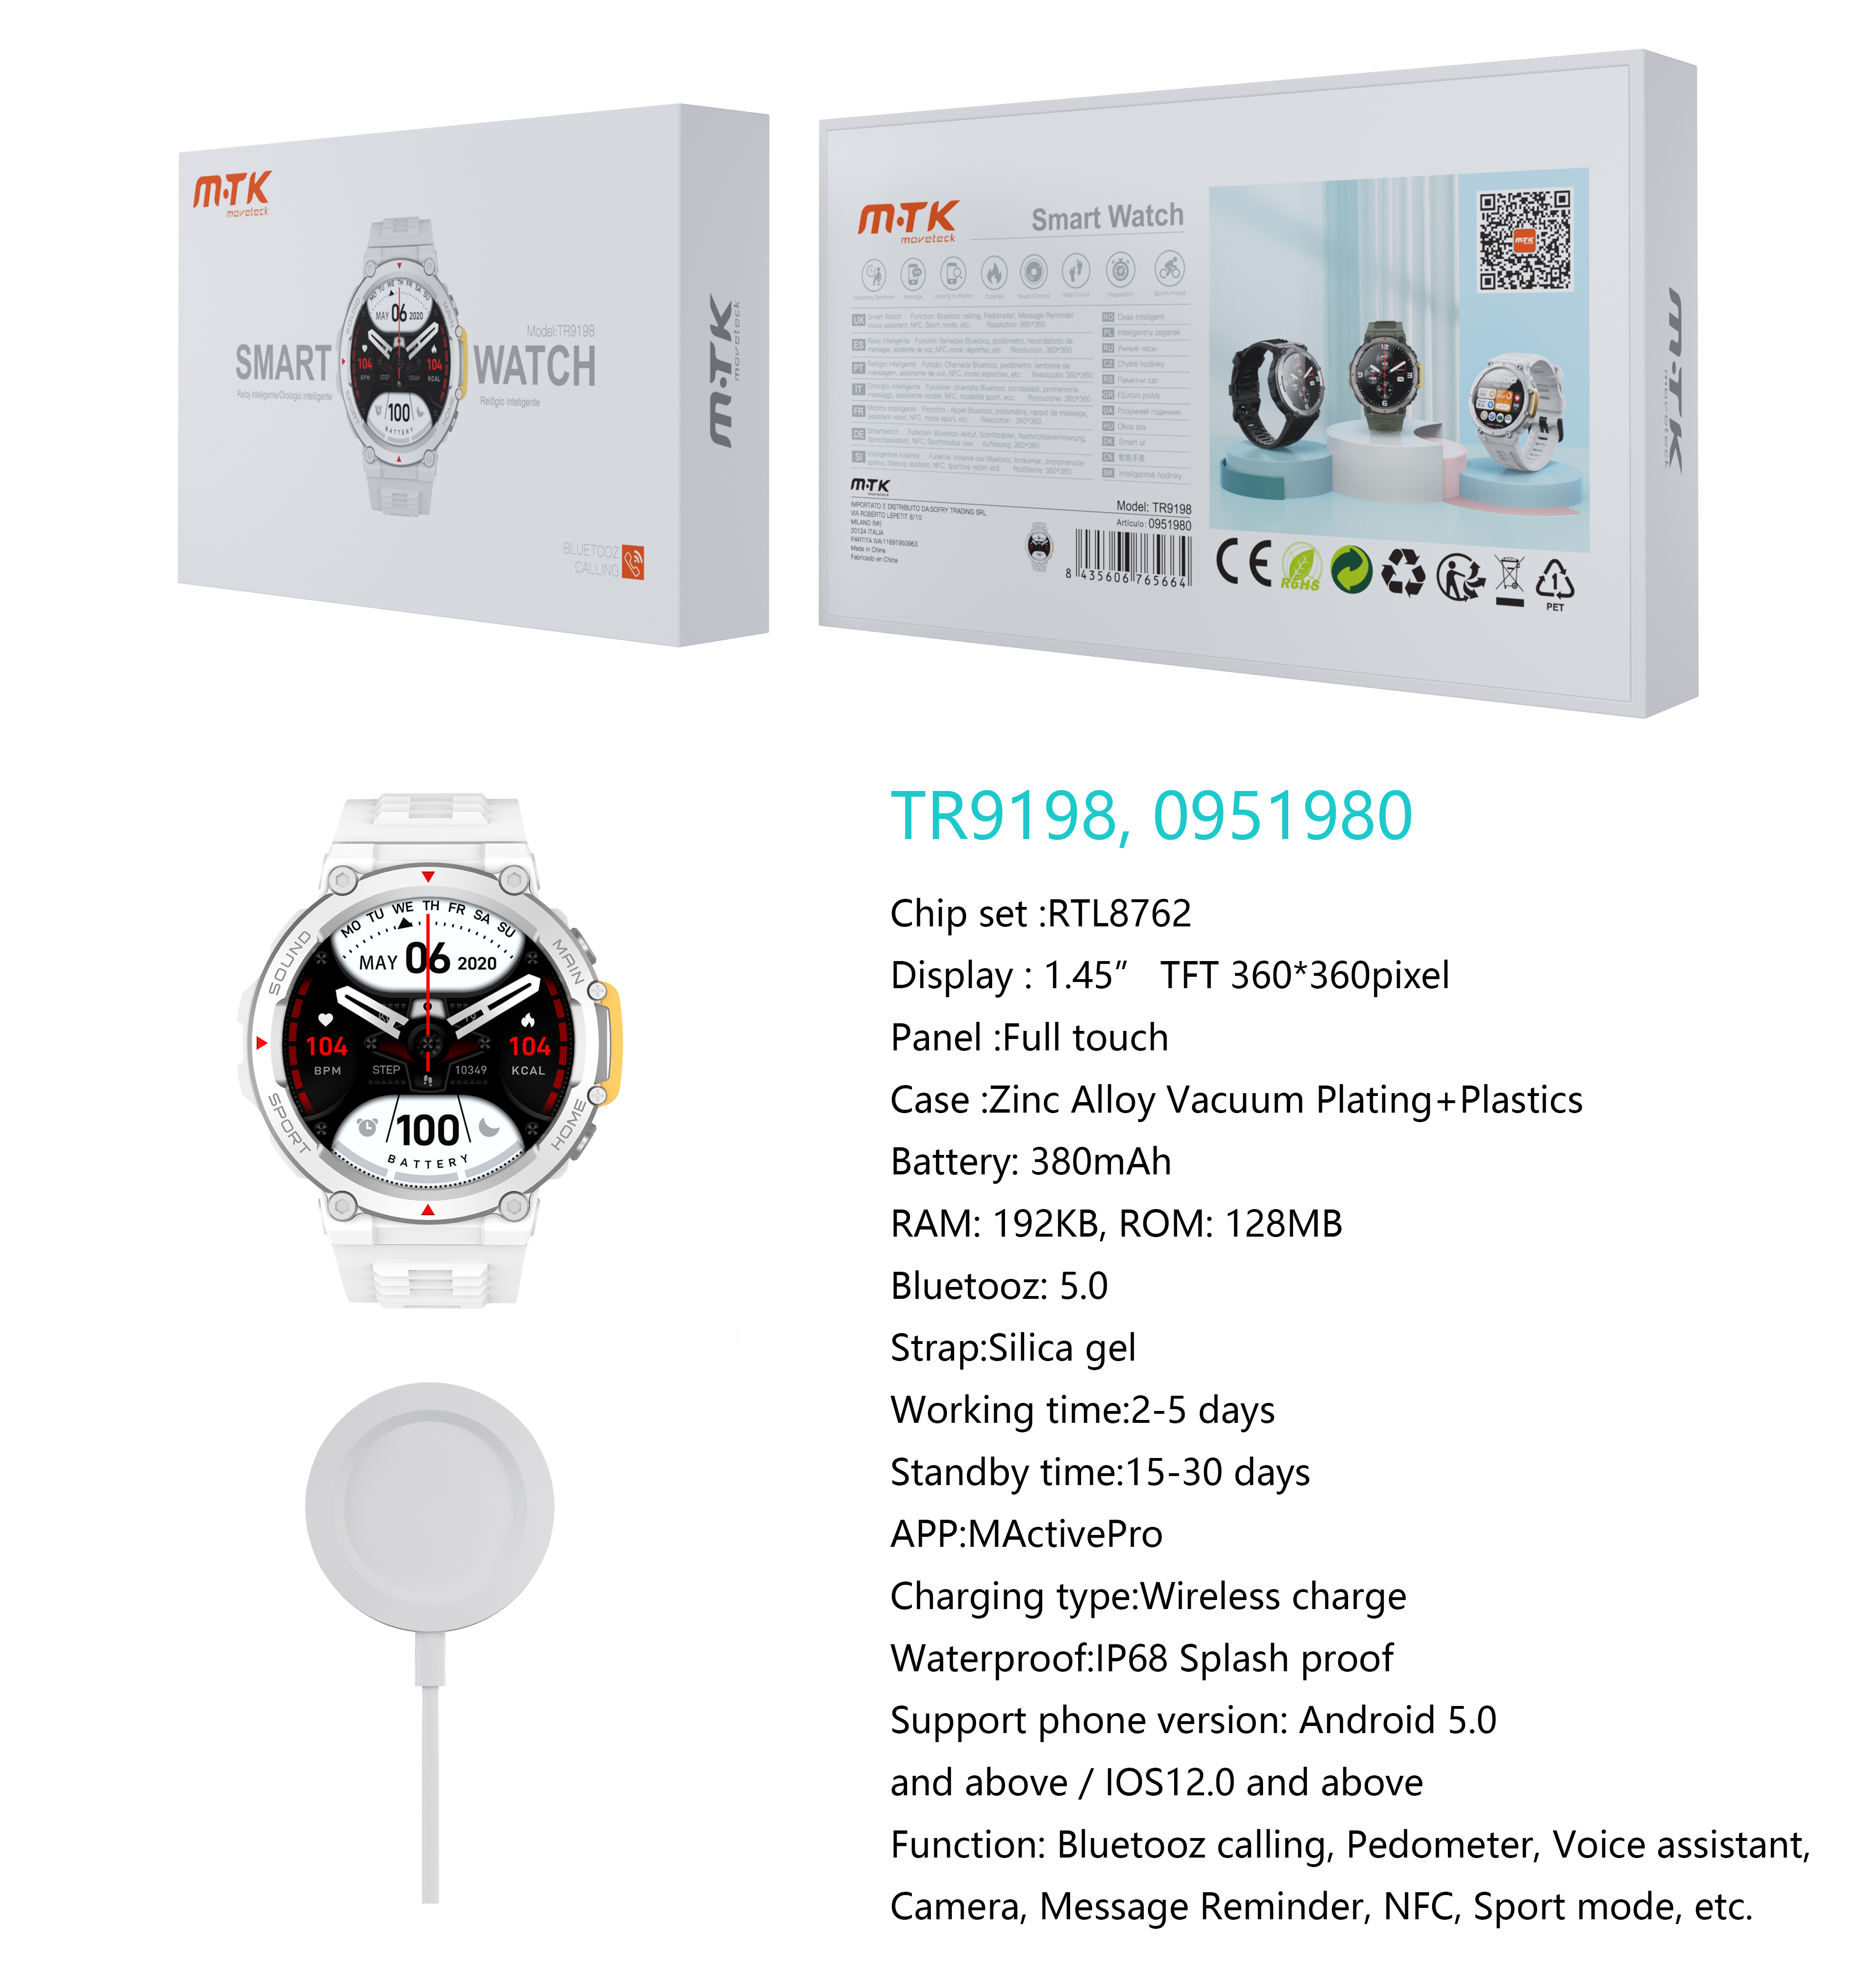 TR9198 BL Reloj Inteligente con bluetooth 5.0, Pantalla tactil de 1.45 pulgadas Con Cargador inalambrico, Soporta NFC de Puerta Inteligente, llemadas,